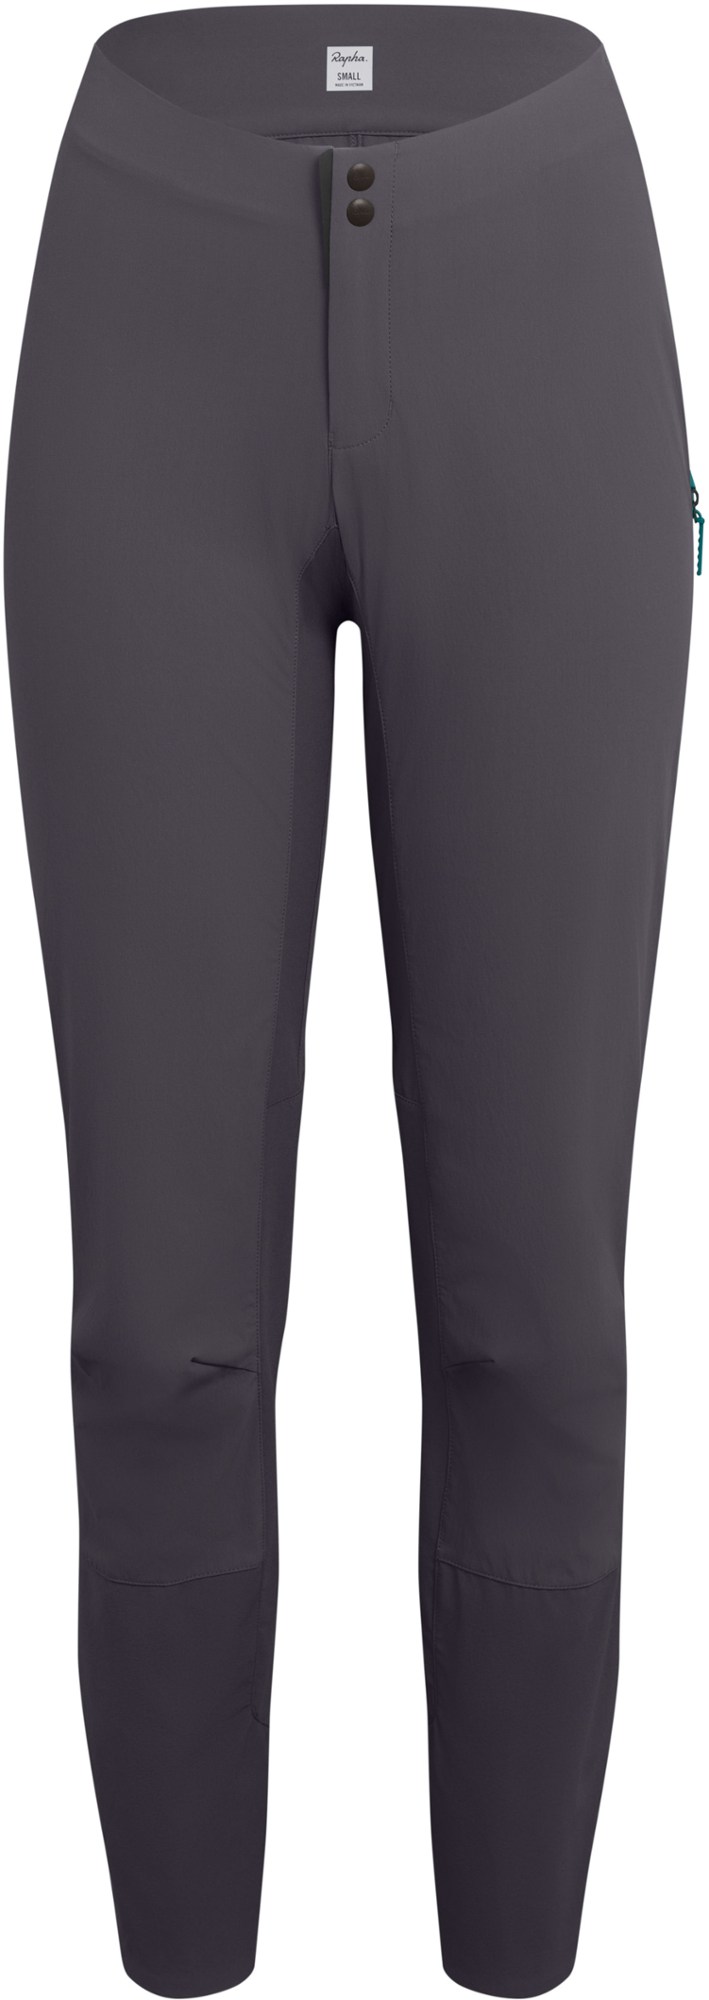 Легкие велосипедные брюки Trail — женские Rapha, серый легкие брюки trail мужские rapha серый светло серый